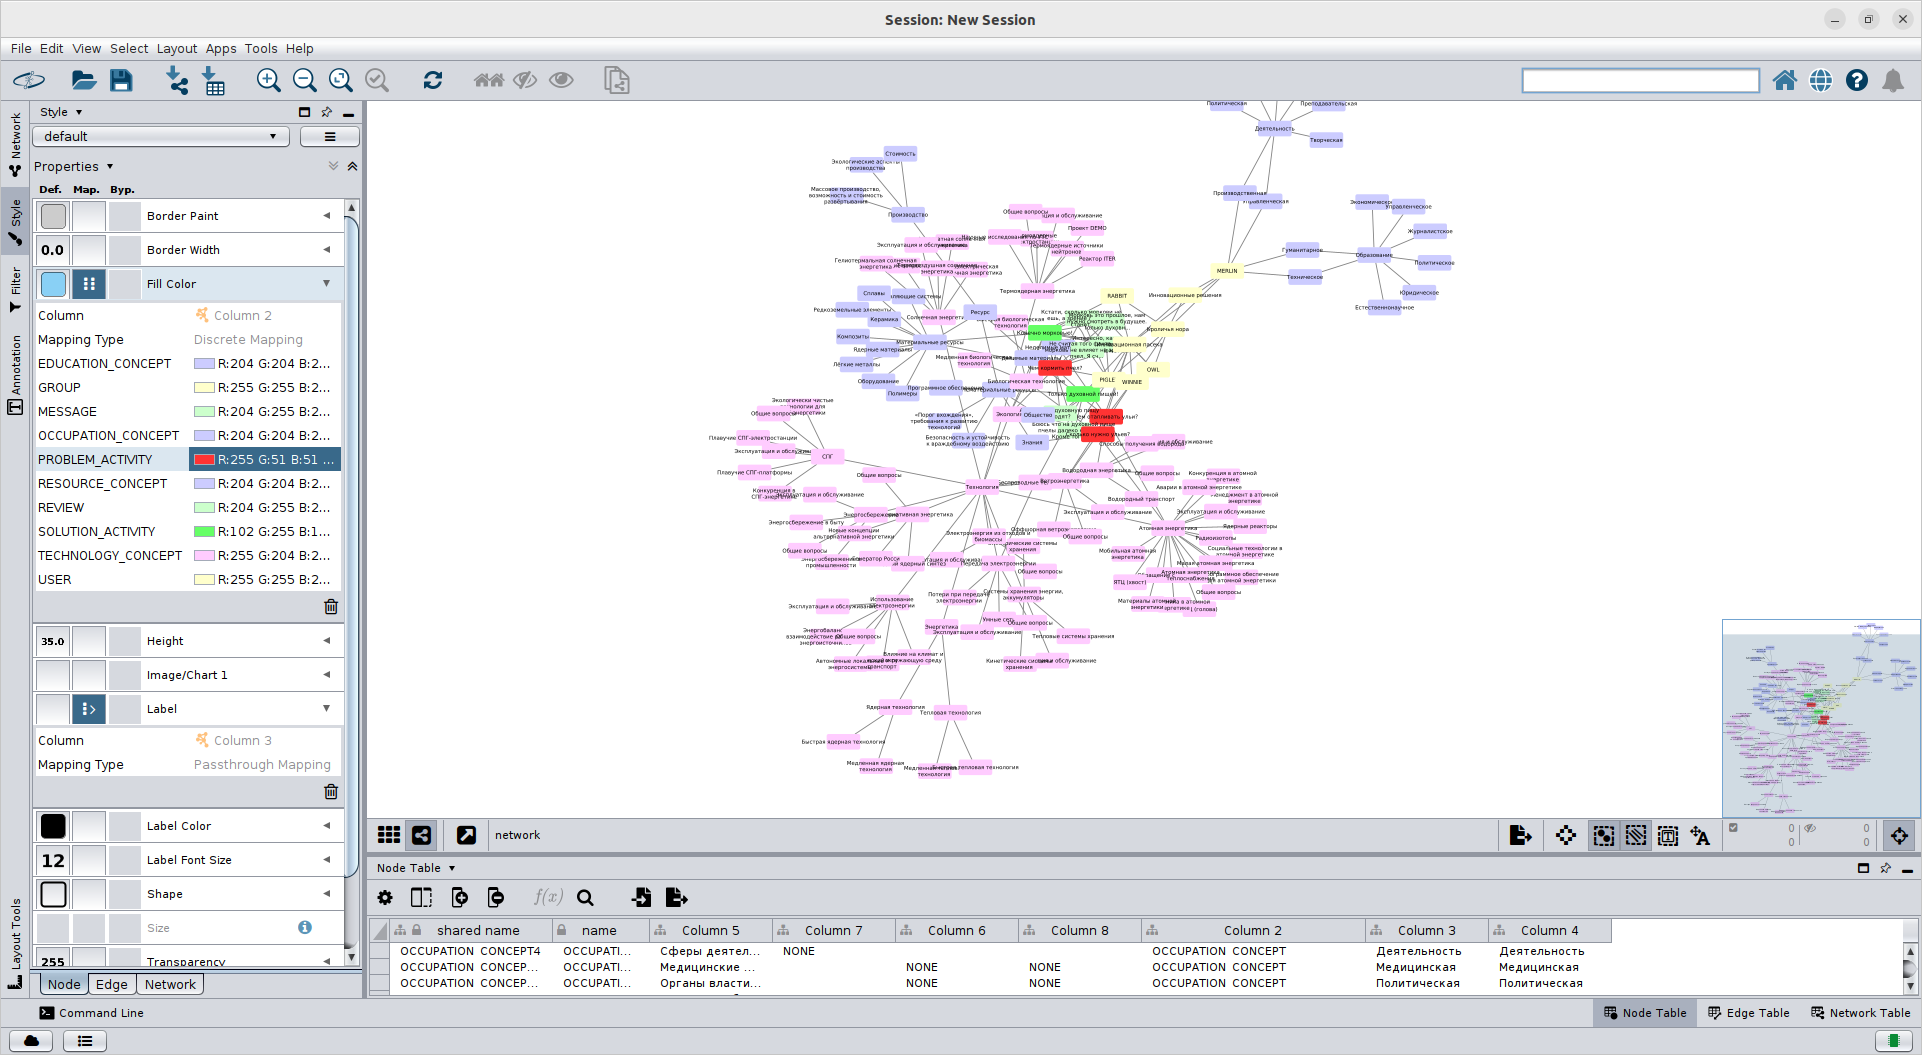 Интерфейс CytoScape с графическим представлением взаимосвязей между группами, пользователями, задачами, решениями, технологиями и ресурсами (естественно, подготовленными Винни Пухом и его друзьями)